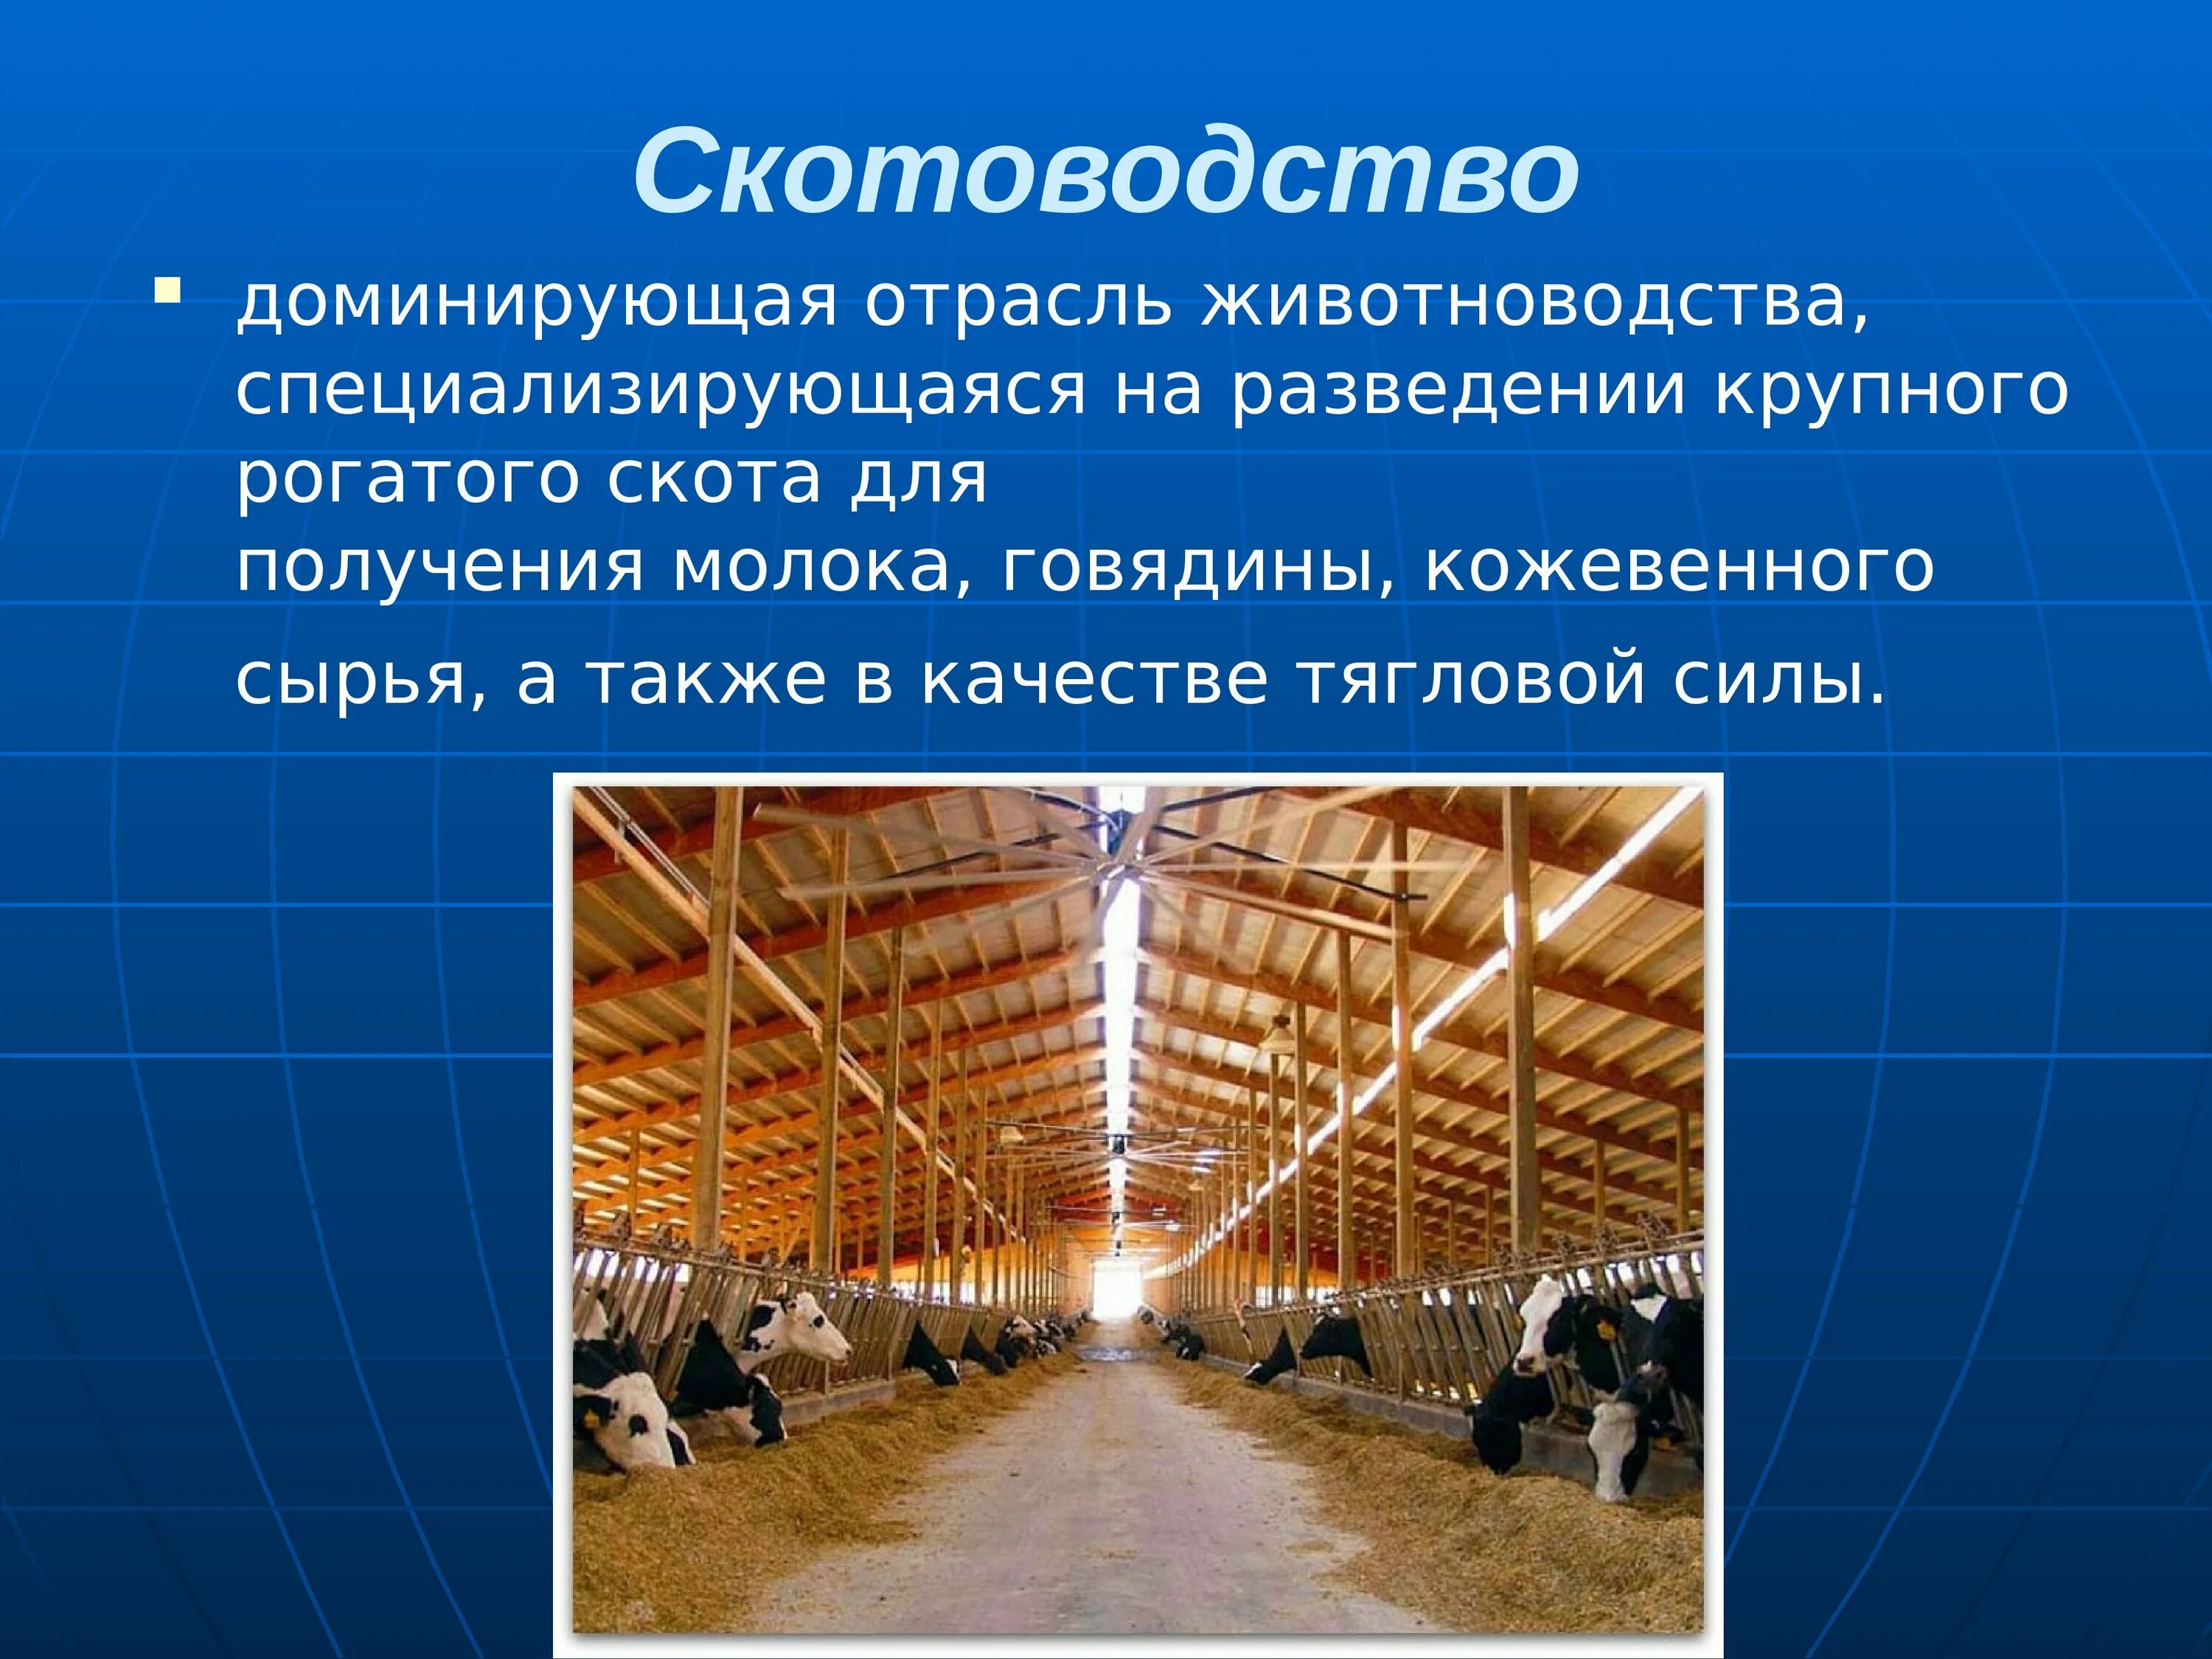 Сельскохозяйственные технологии 5 класс. Скотоводство отрасль животноводства. Животноводство презентация. Презентация отрасли животноводства. Презентация на тему скотоводство.